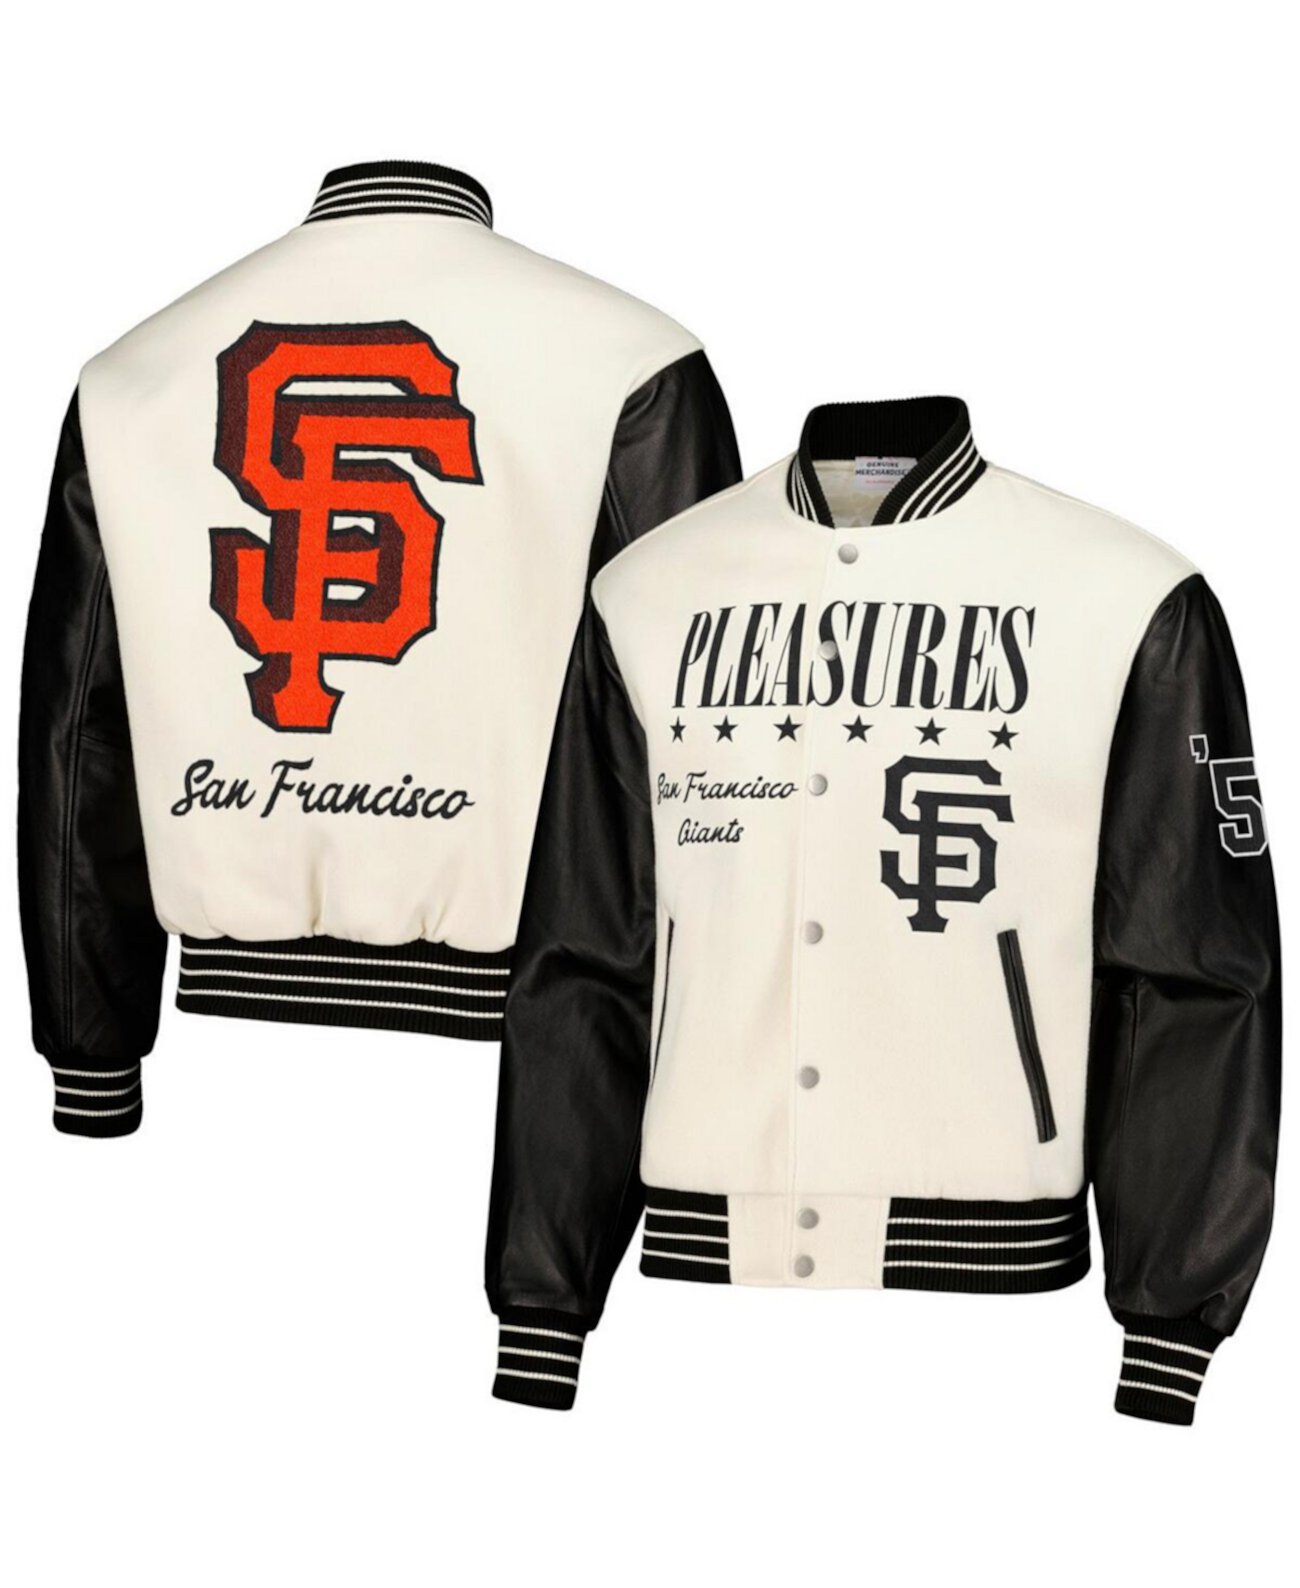 Мужская белая университетская куртка с полной застежкой San Francisco Giants PLEASURES